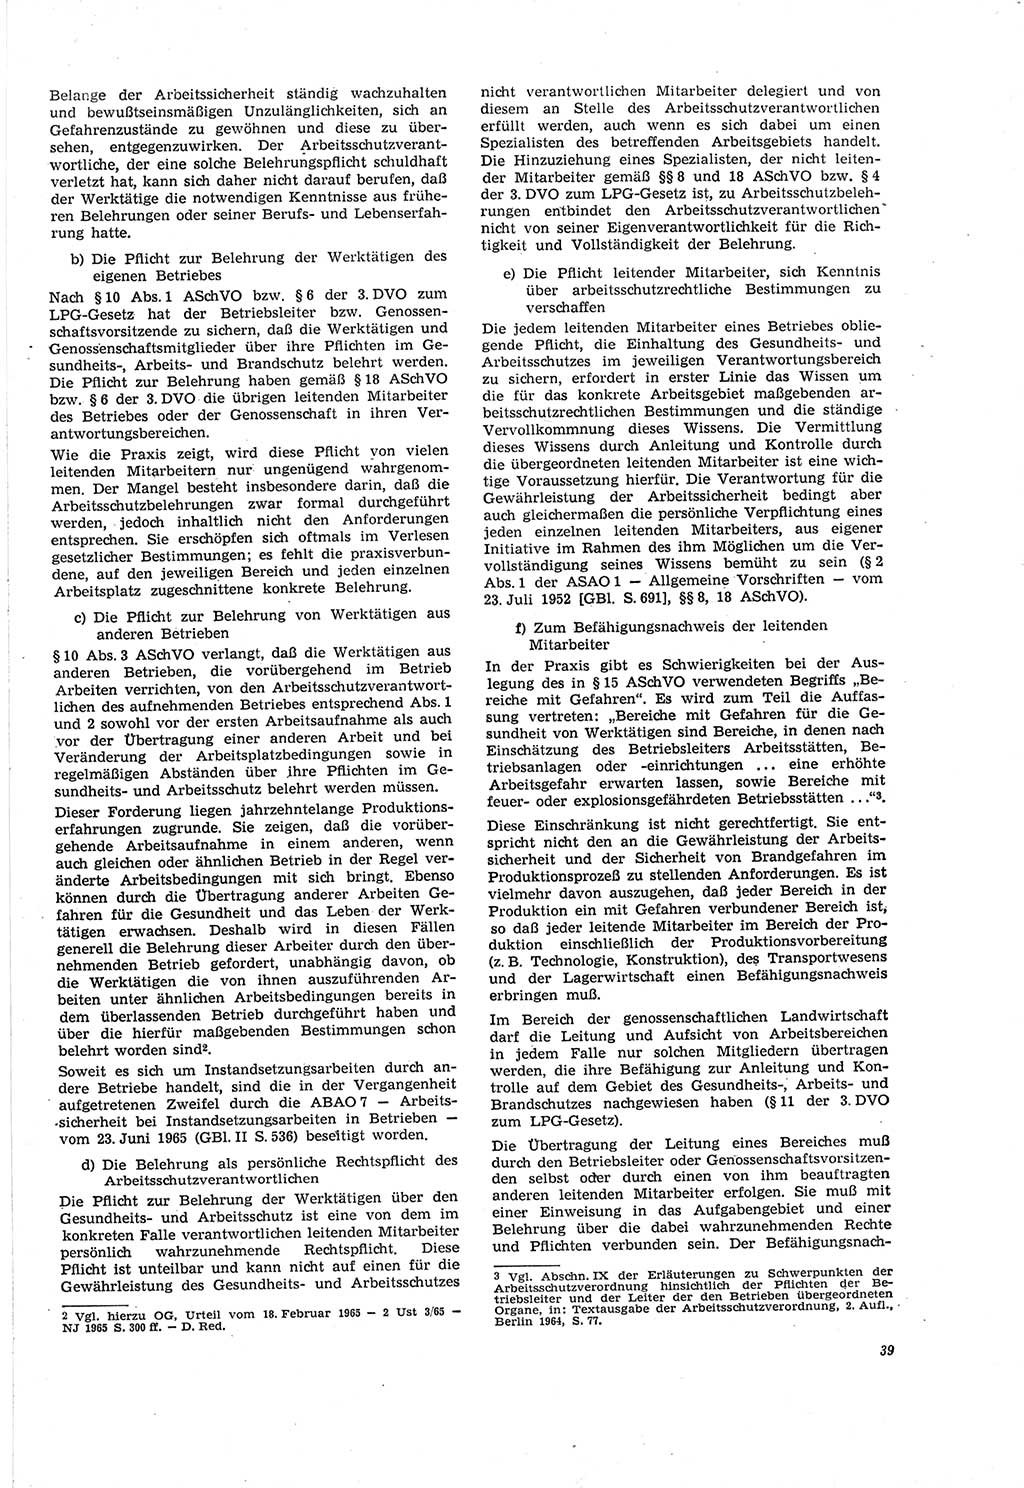 Neue Justiz (NJ), Zeitschrift für Recht und Rechtswissenschaft [Deutsche Demokratische Republik (DDR)], 20. Jahrgang 1966, Seite 39 (NJ DDR 1966, S. 39)